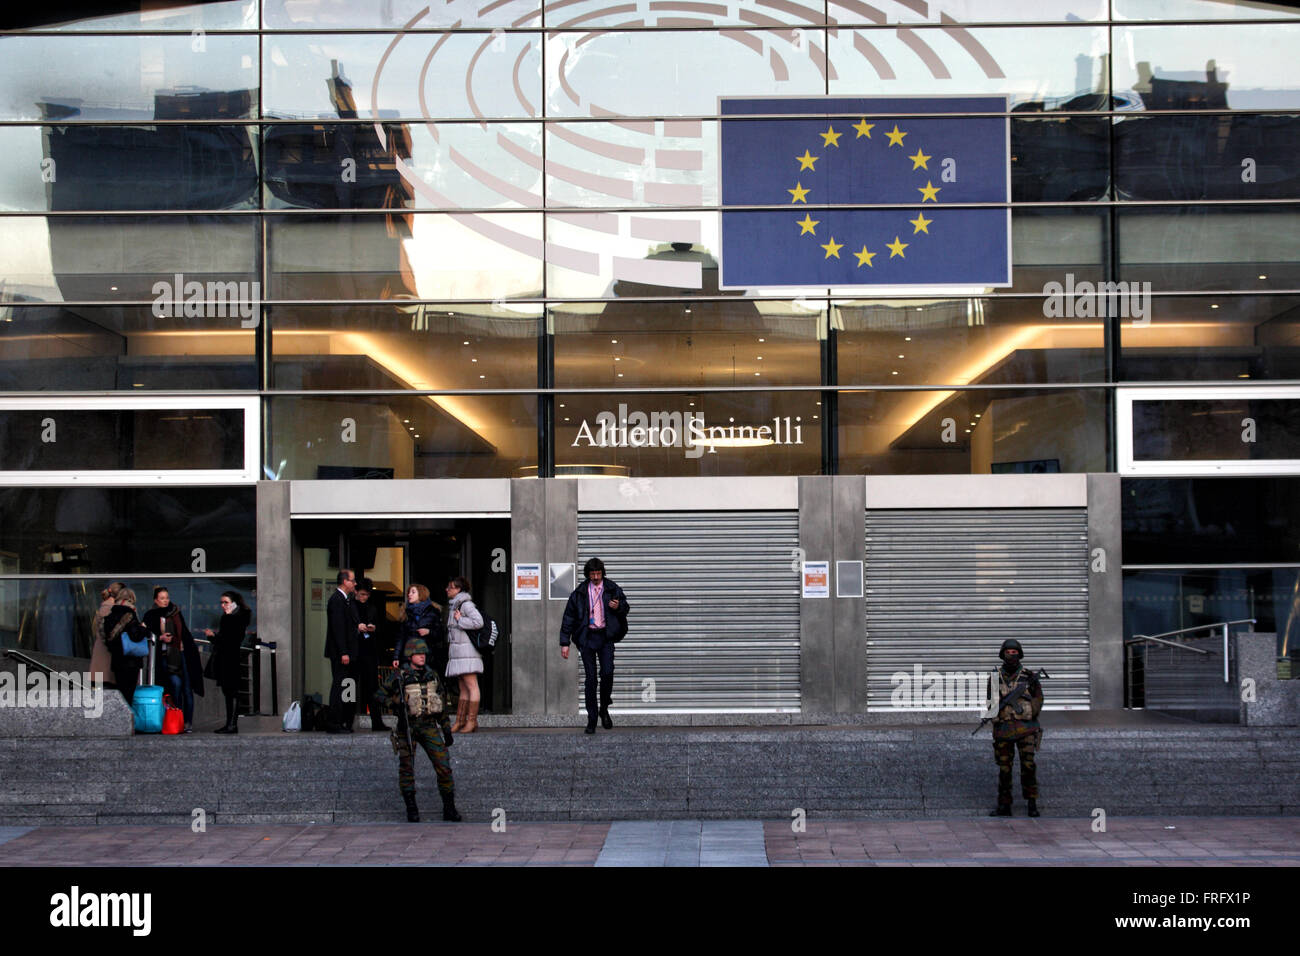 Bruxelles, Belgio. 22 Mar, 2016. Soldati di guardia al di fuori del Parlamento europeo dopo gli attentati che hanno scosso il Belgio Credito: Rey T. Byhre/Alamy Live News Foto Stock